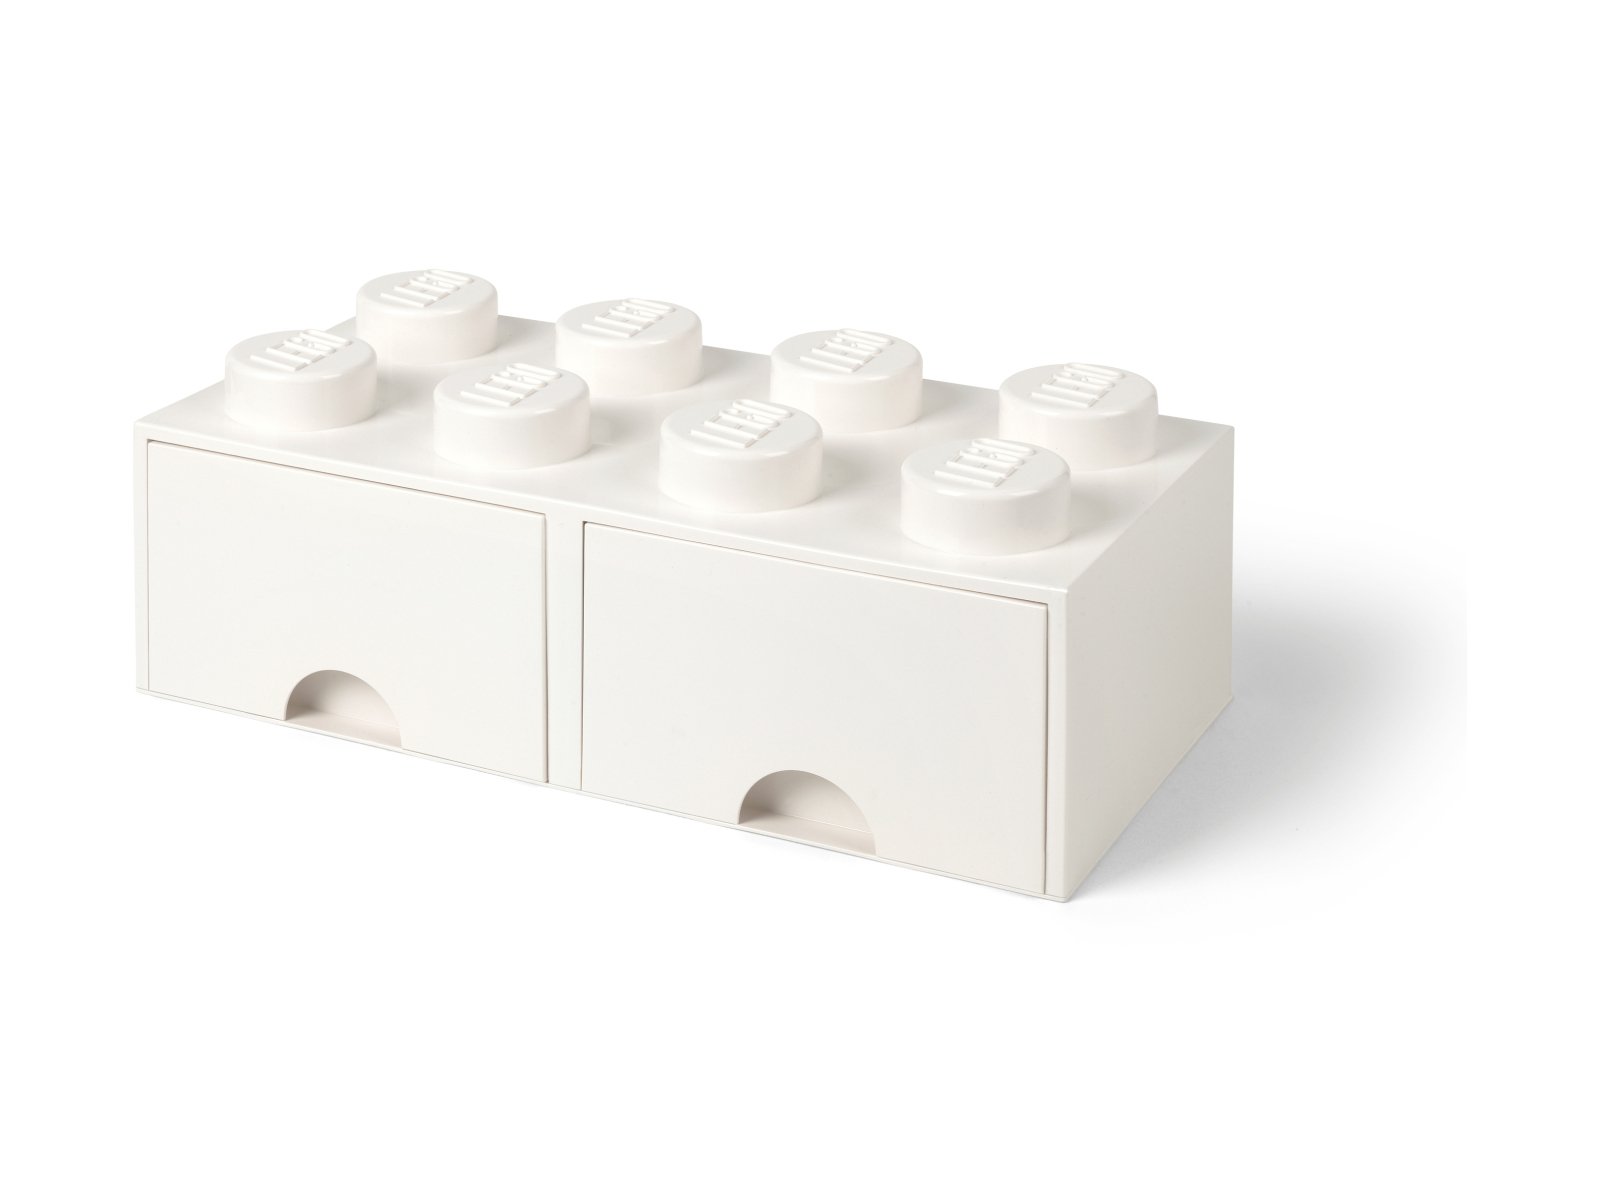 LEGO 5006209 Pudełko z szufladą w kształcie białego klocka LEGO® z 8 wypustkami